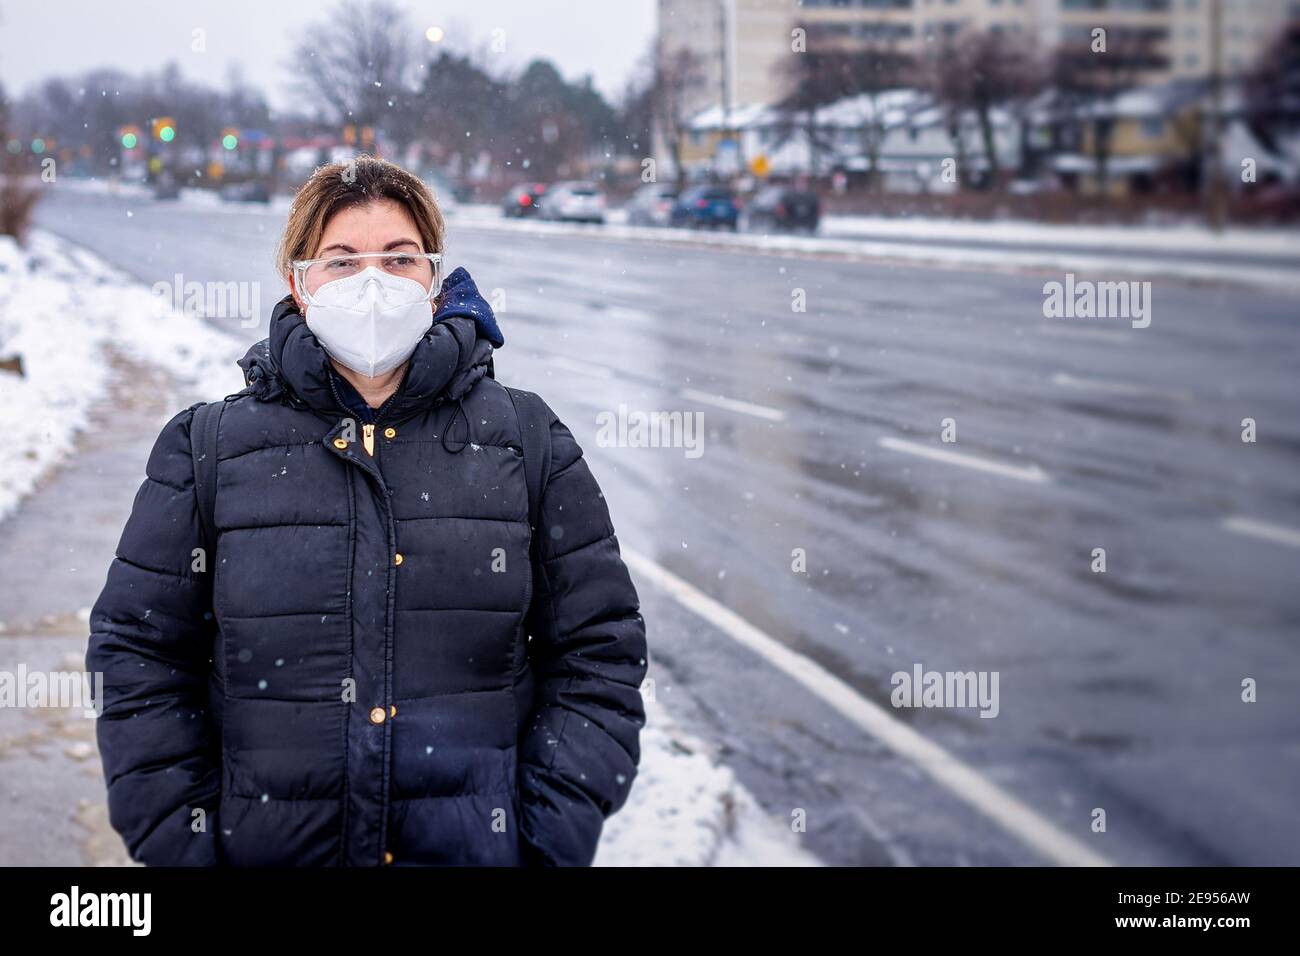 Covid-19 oder Coronavirus, eine Frau mit einer schützenden Gesichtsmaske im Winter, Kanada, 2021 Stockfoto